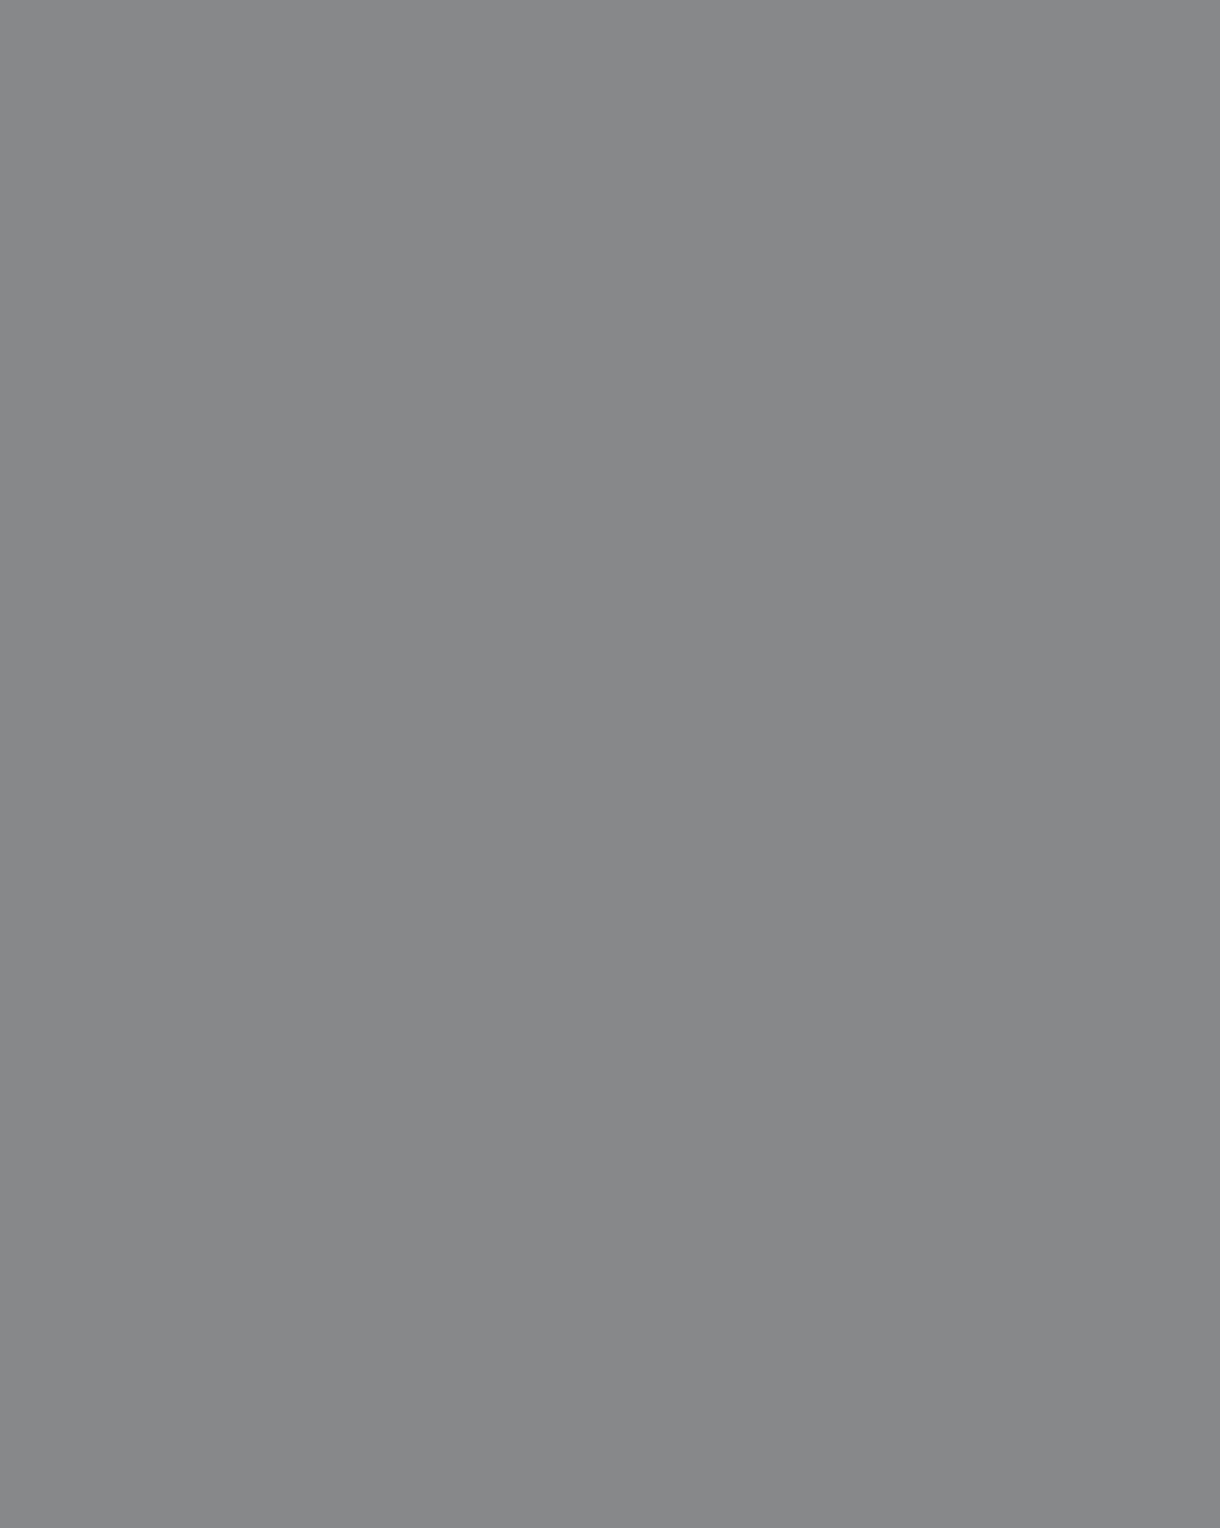 С.И. Телин. Дом Вульфов в Бернове (фрагмент). 1977. Всероссийский историко-этнографический музей, Торжок, Тверская область